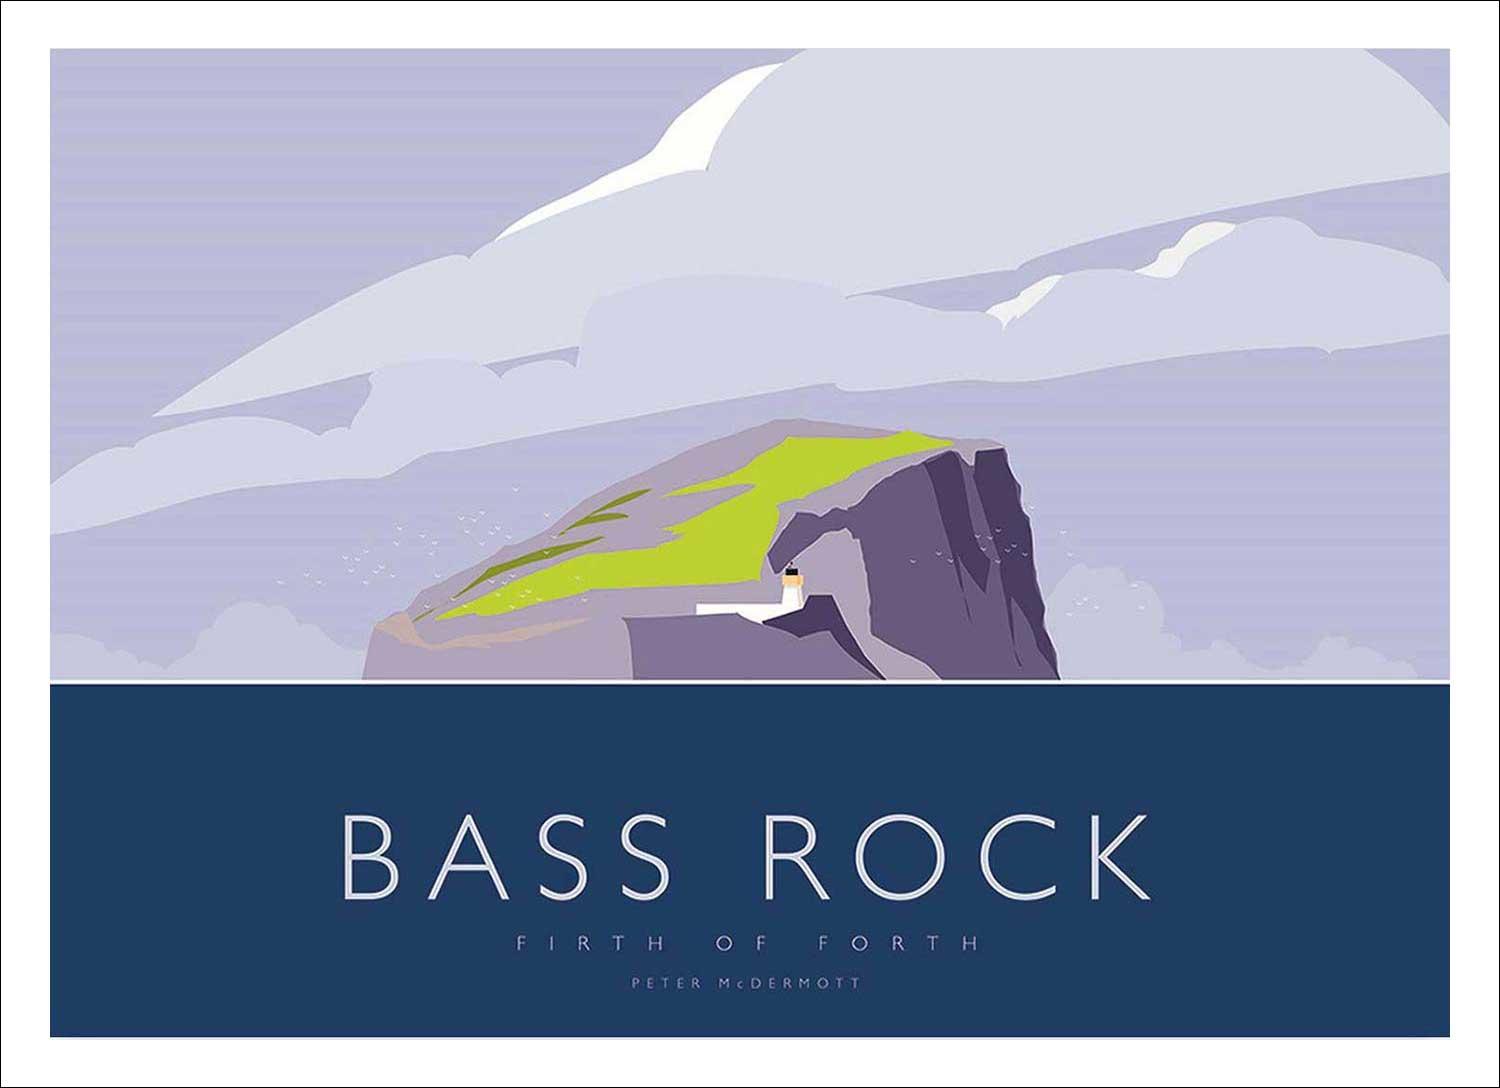 Bass Rock Art Print from an original illustration by artist Peter McDermott